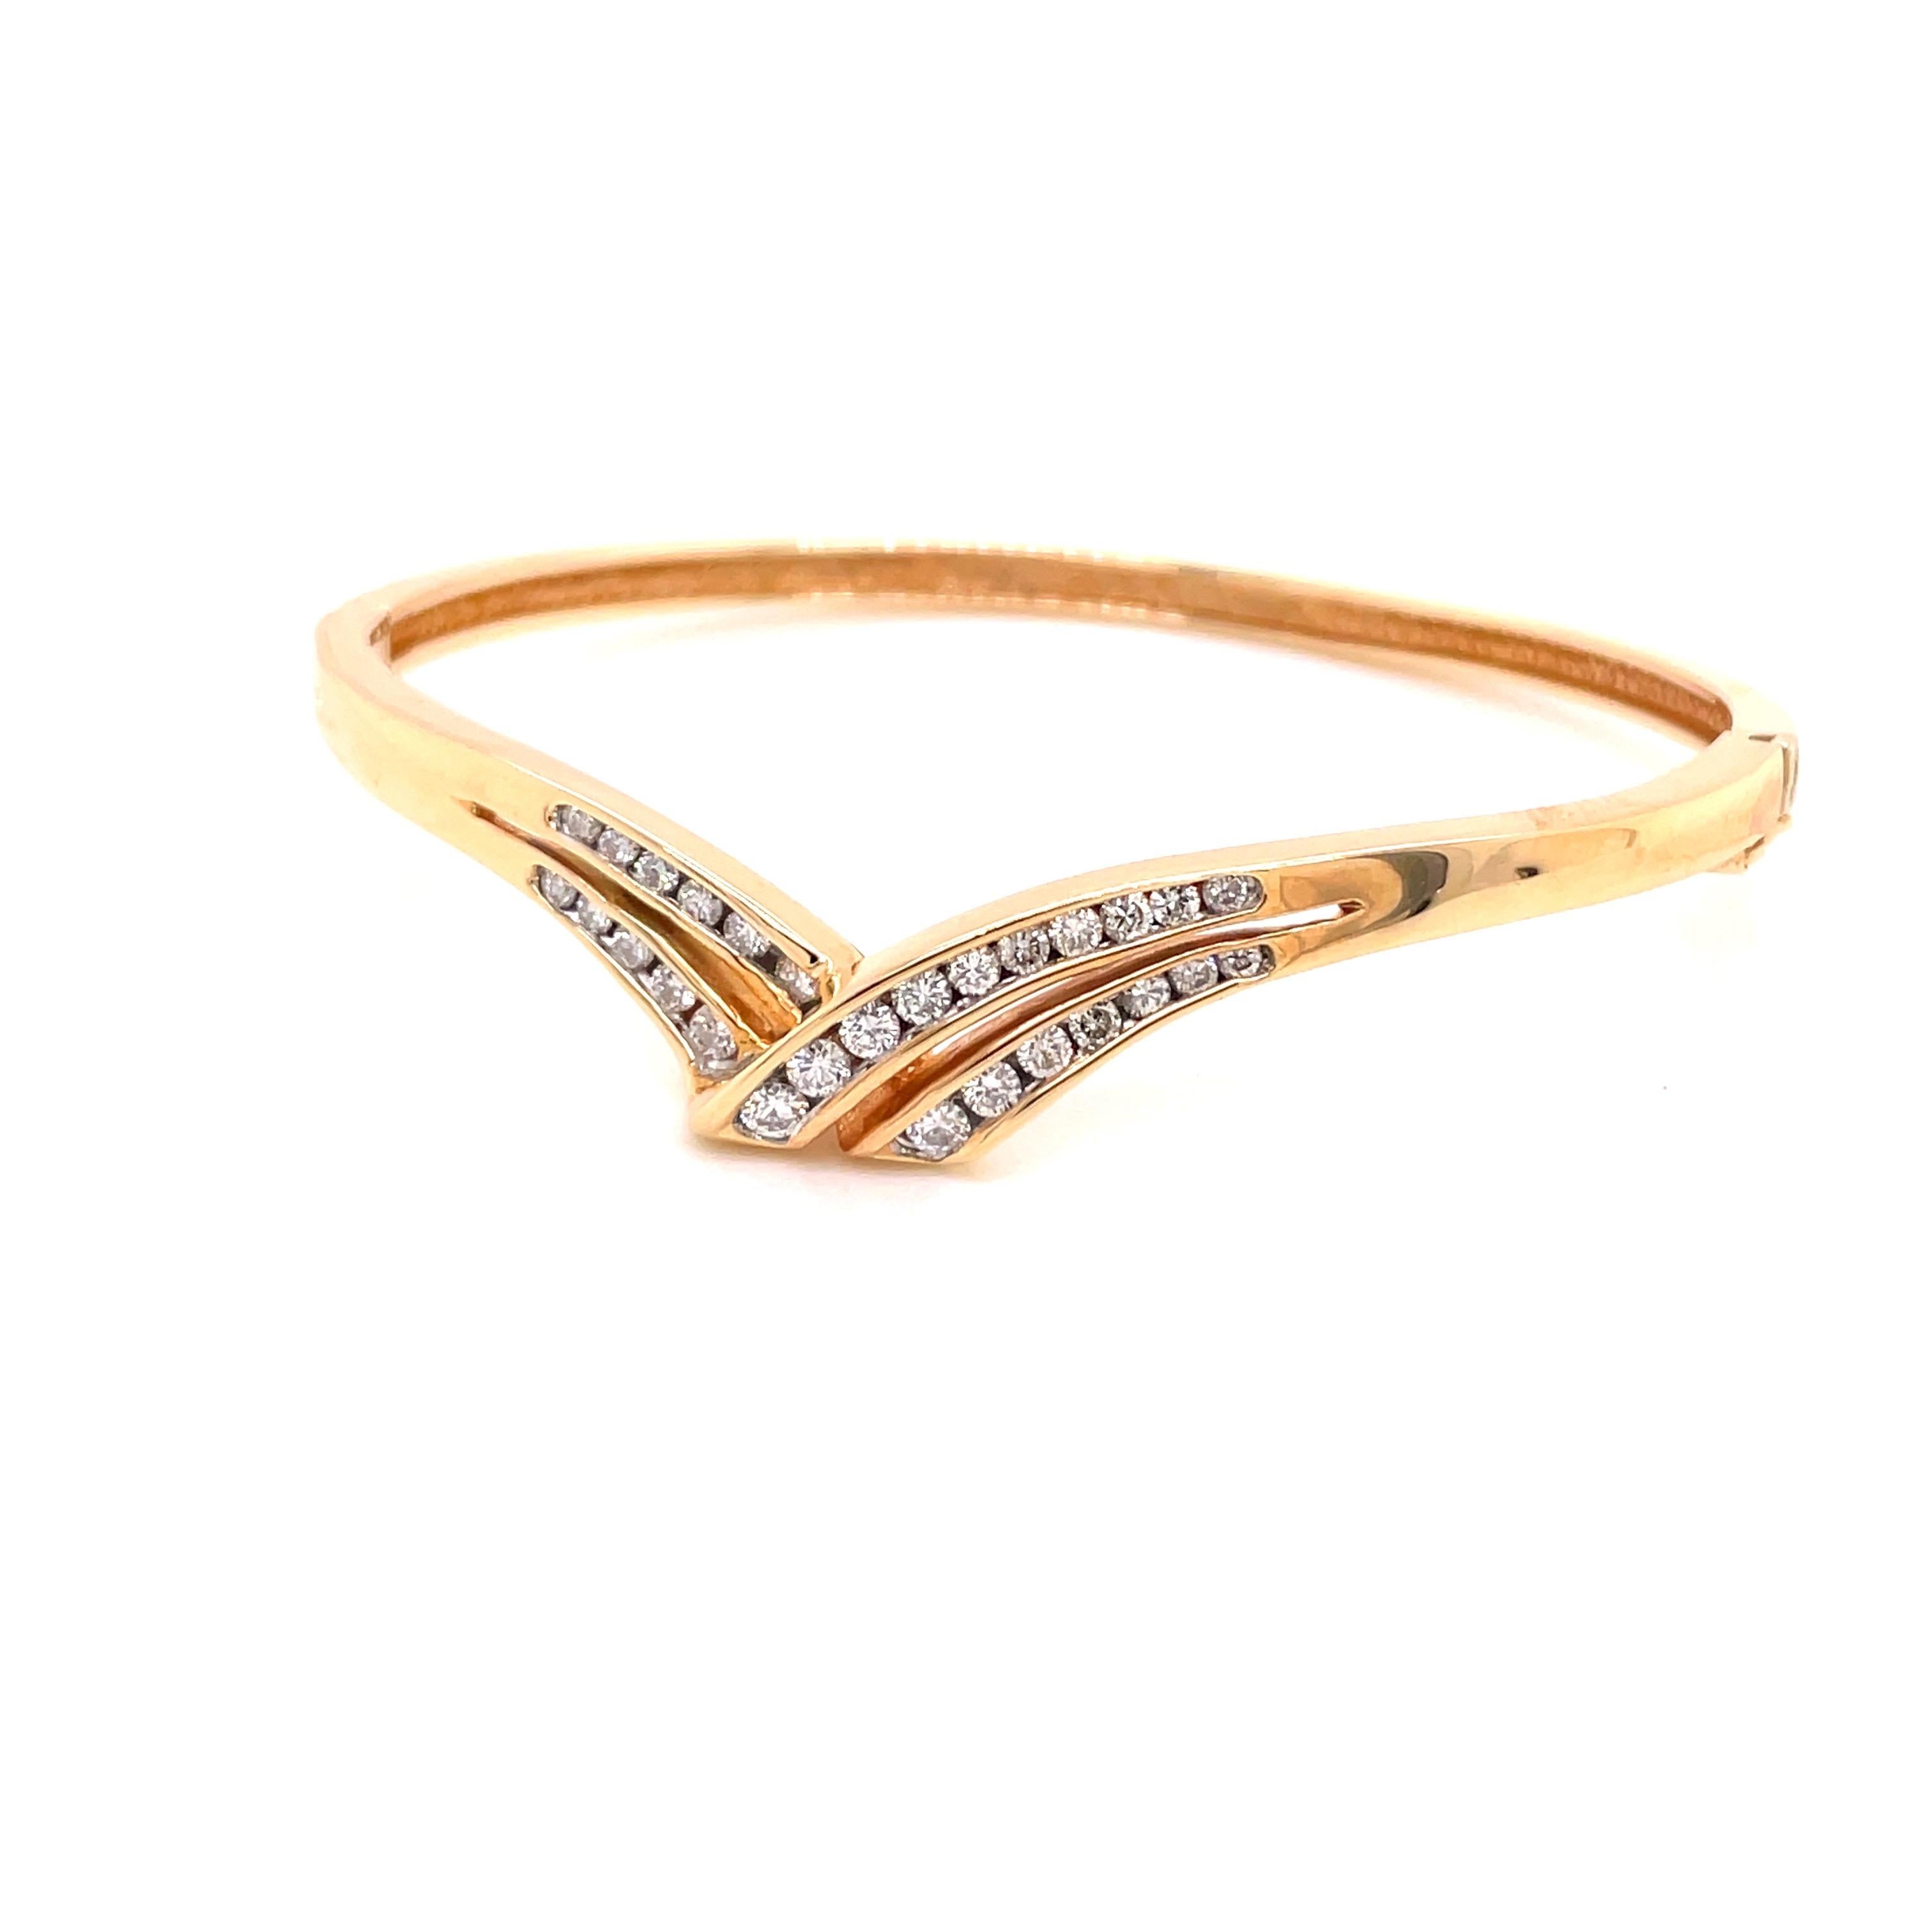 14K Gelbgold Diamond Bangle Bracelet .87ct - Der Armreif hat Kanal gesetzt 28 runde Brillanten mit einem Gewicht von .87ct mit G - H Farbe und SI Klarheit. Die Breite des Armreifs beträgt oben 8 mm und verjüngt sich nach unten auf 3,3 mm. Das